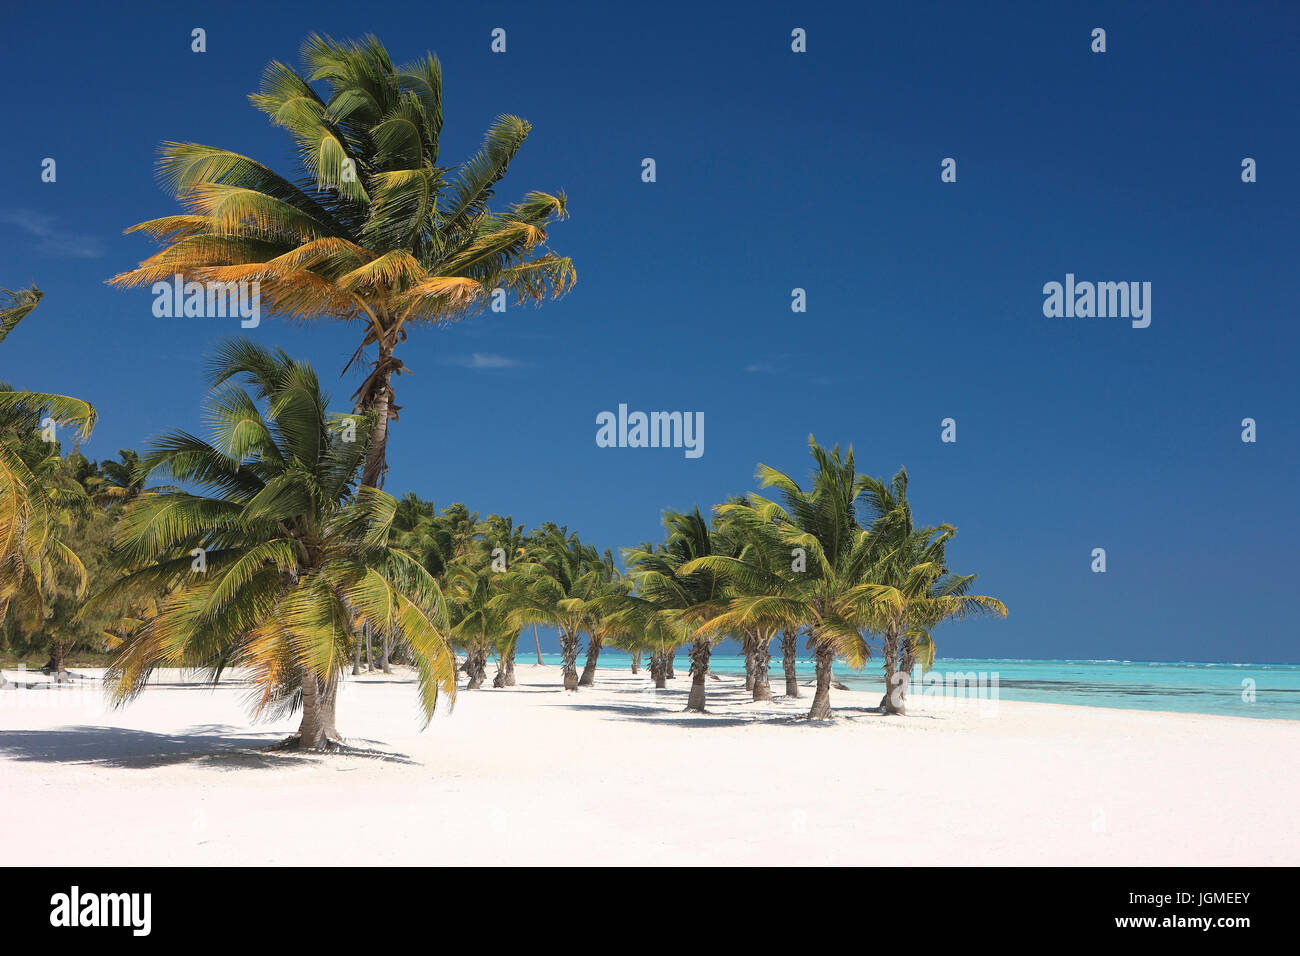 Le palme da cocco sulla spiaggia sabbiosa con Punta Cana, Repubblica Dominicana e dei Caraibi - palma da cocco presso la spiaggia vicino a Punta Cana, Repubblica dominicana, C Foto Stock